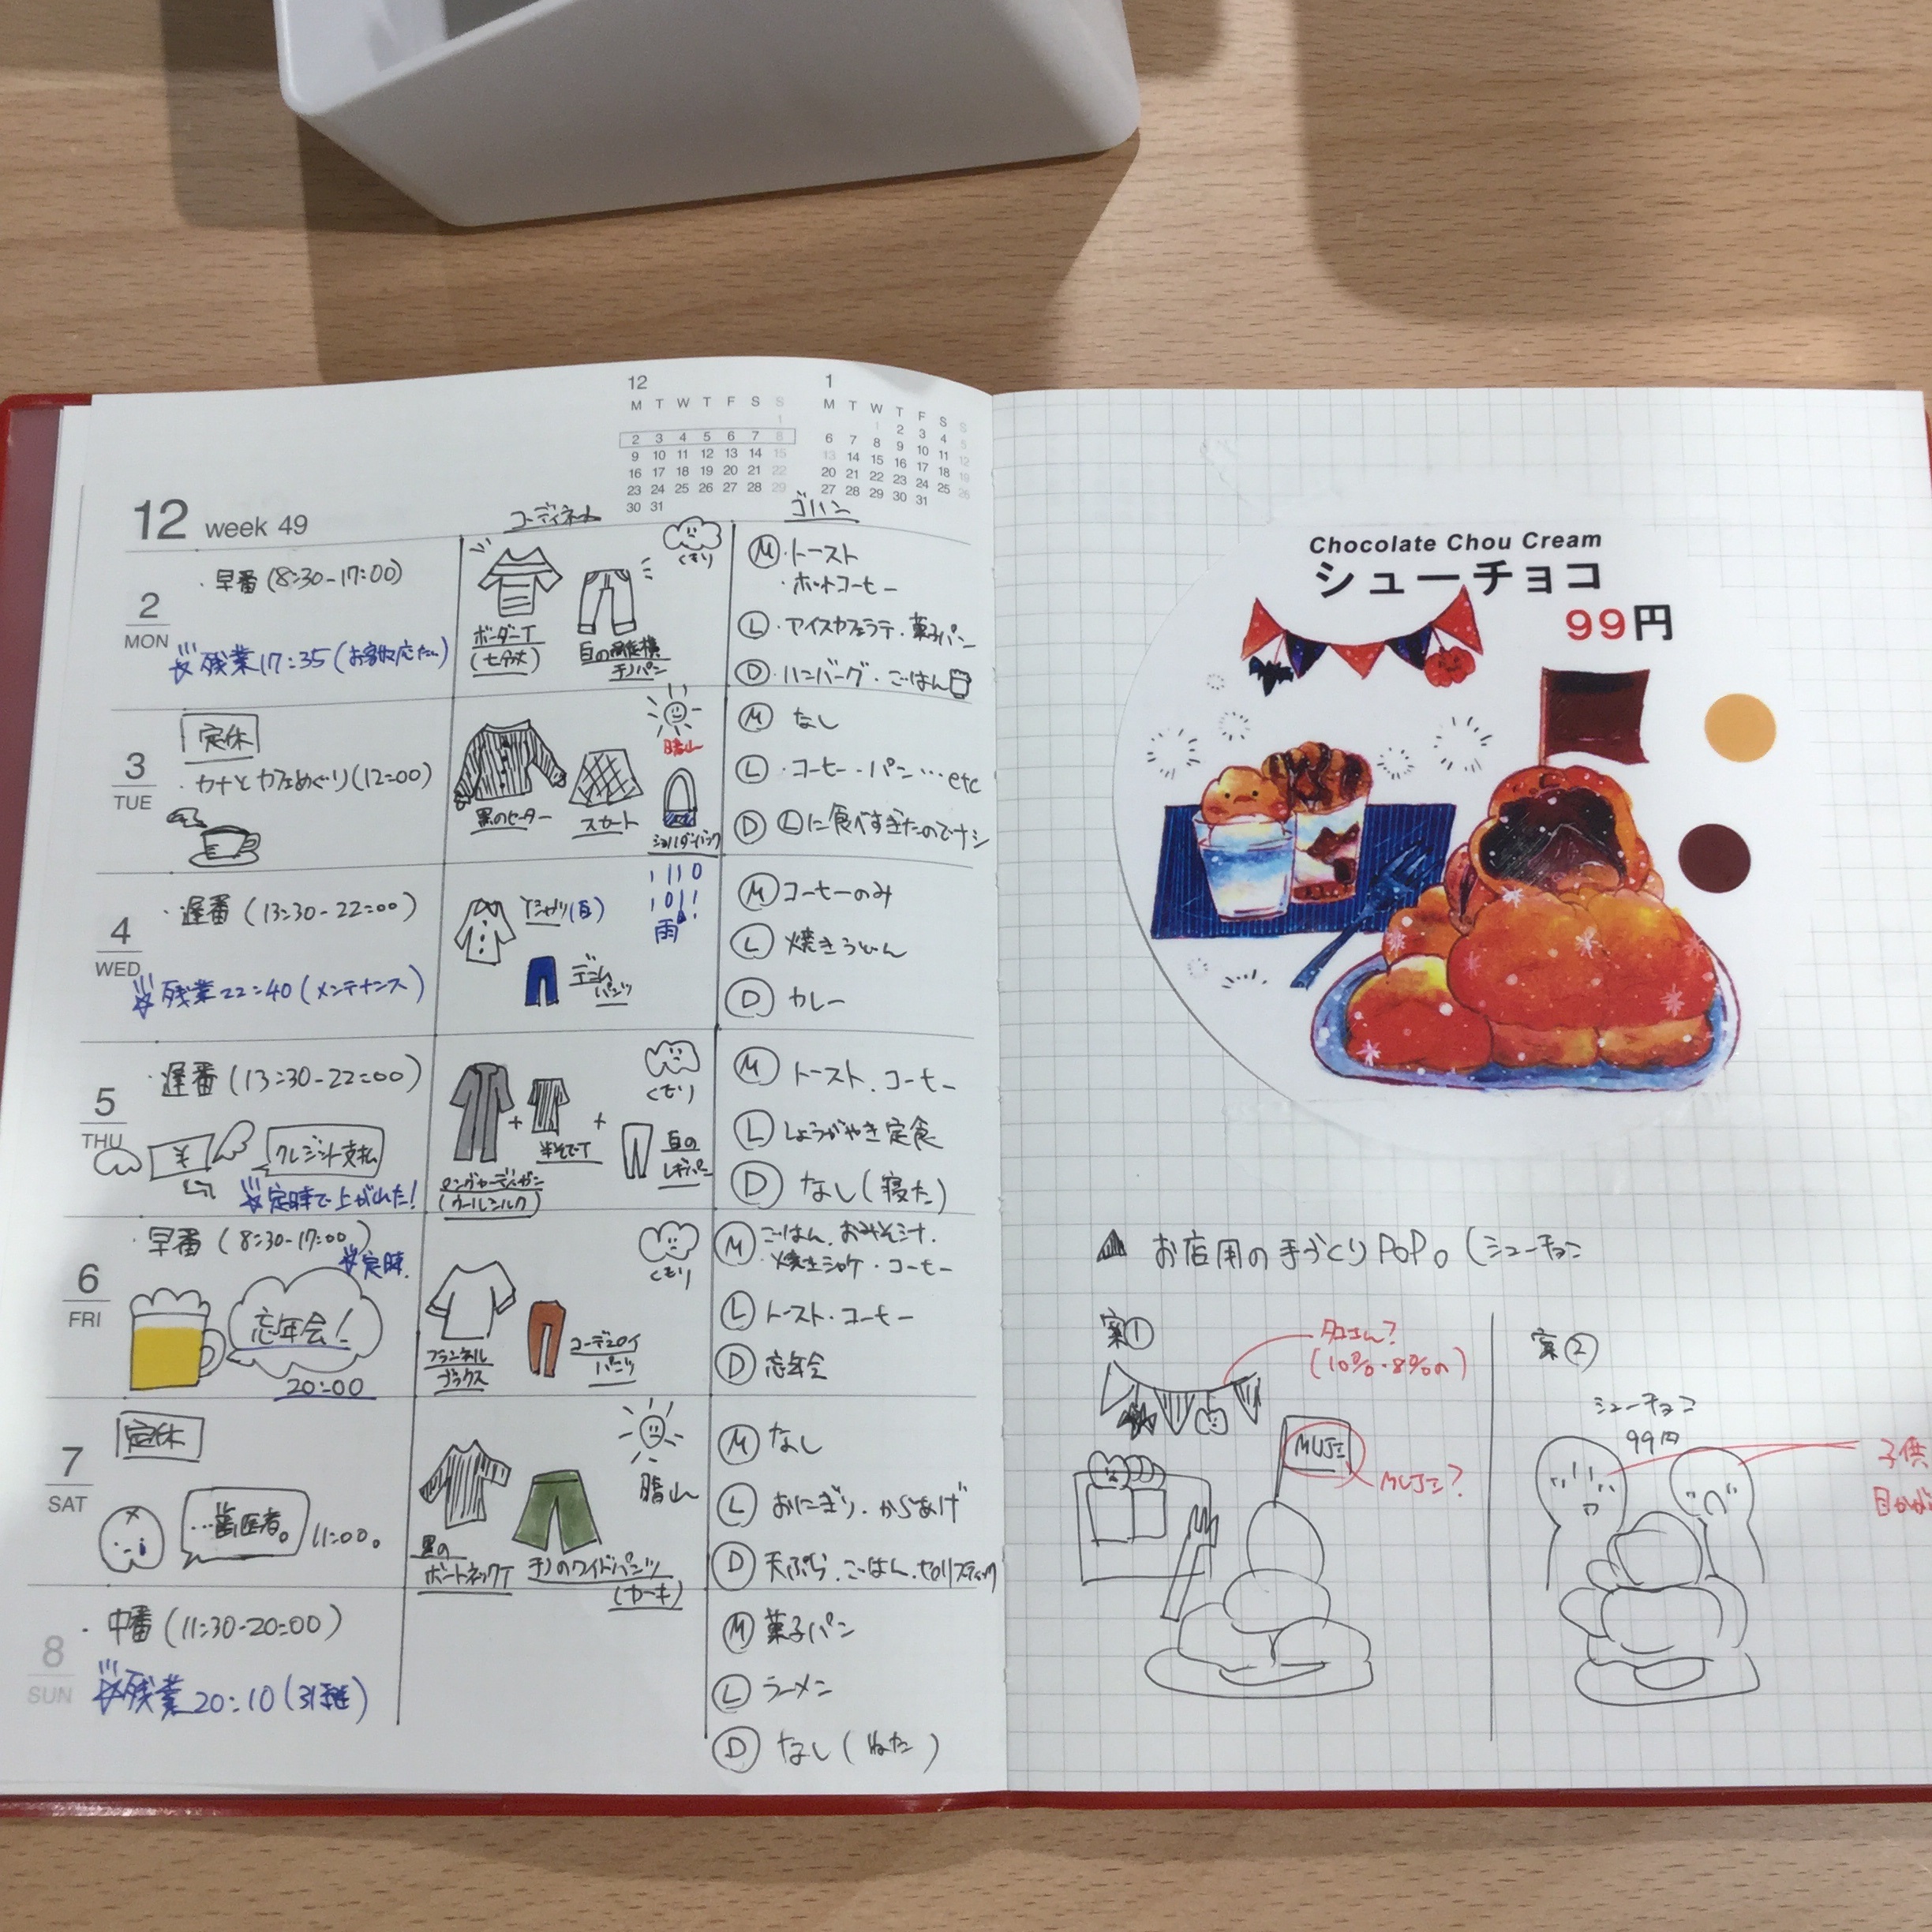 錦糸町パルコ 12月始まりのスケジュール帳とカレンダー 錦パルほのぼの絵日記 無印良品